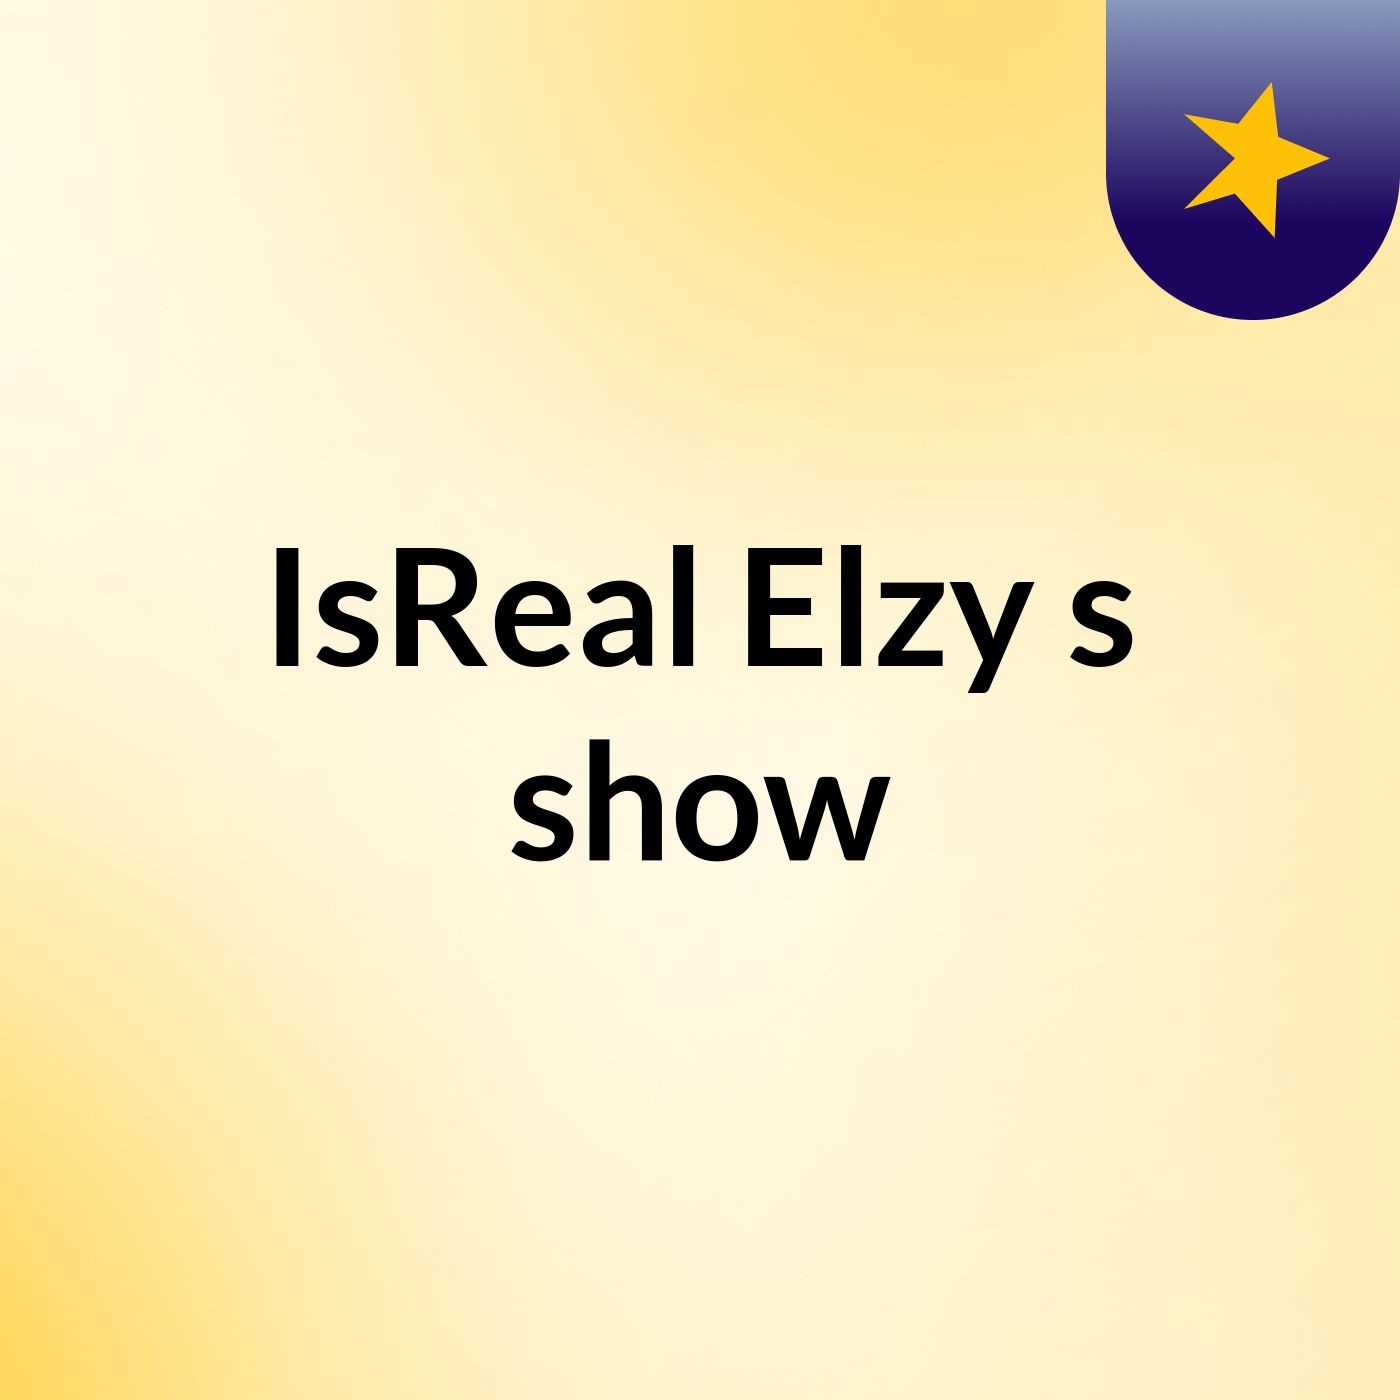 IsReal Elzy's show